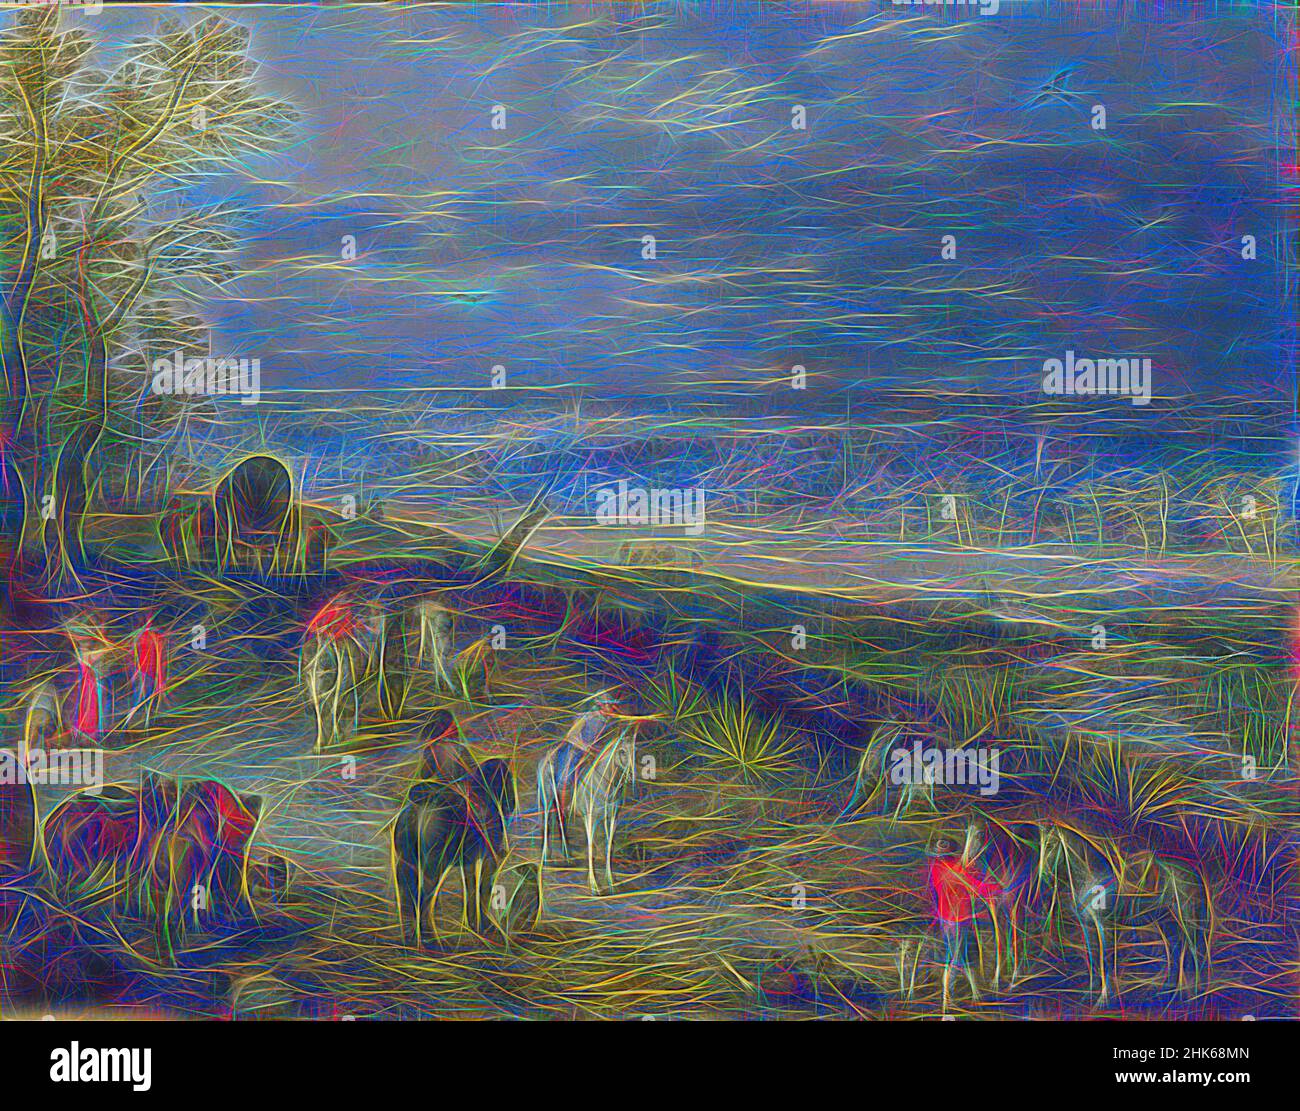 Inspiré par un paysage étendu avec des voyageurs sur une route de campagne, Jan Brueghel The Elder, Flamand, 1568–1625, c.1608–10, huile sur cuivre, Fabriqué à Anvers, province d'Anvers, Belgique, Europe, peintures, 13 1/4 x 18 1/4 po (33,6 x 46,4 cm, repensé par Artotop. L'art classique réinventé avec une touche moderne. Conception de lumière chaleureuse et gaie, de luminosité et de rayonnement de lumière. La photographie s'inspire du surréalisme et du futurisme, embrassant l'énergie dynamique de la technologie moderne, du mouvement, de la vitesse et révolutionne la culture Banque D'Images